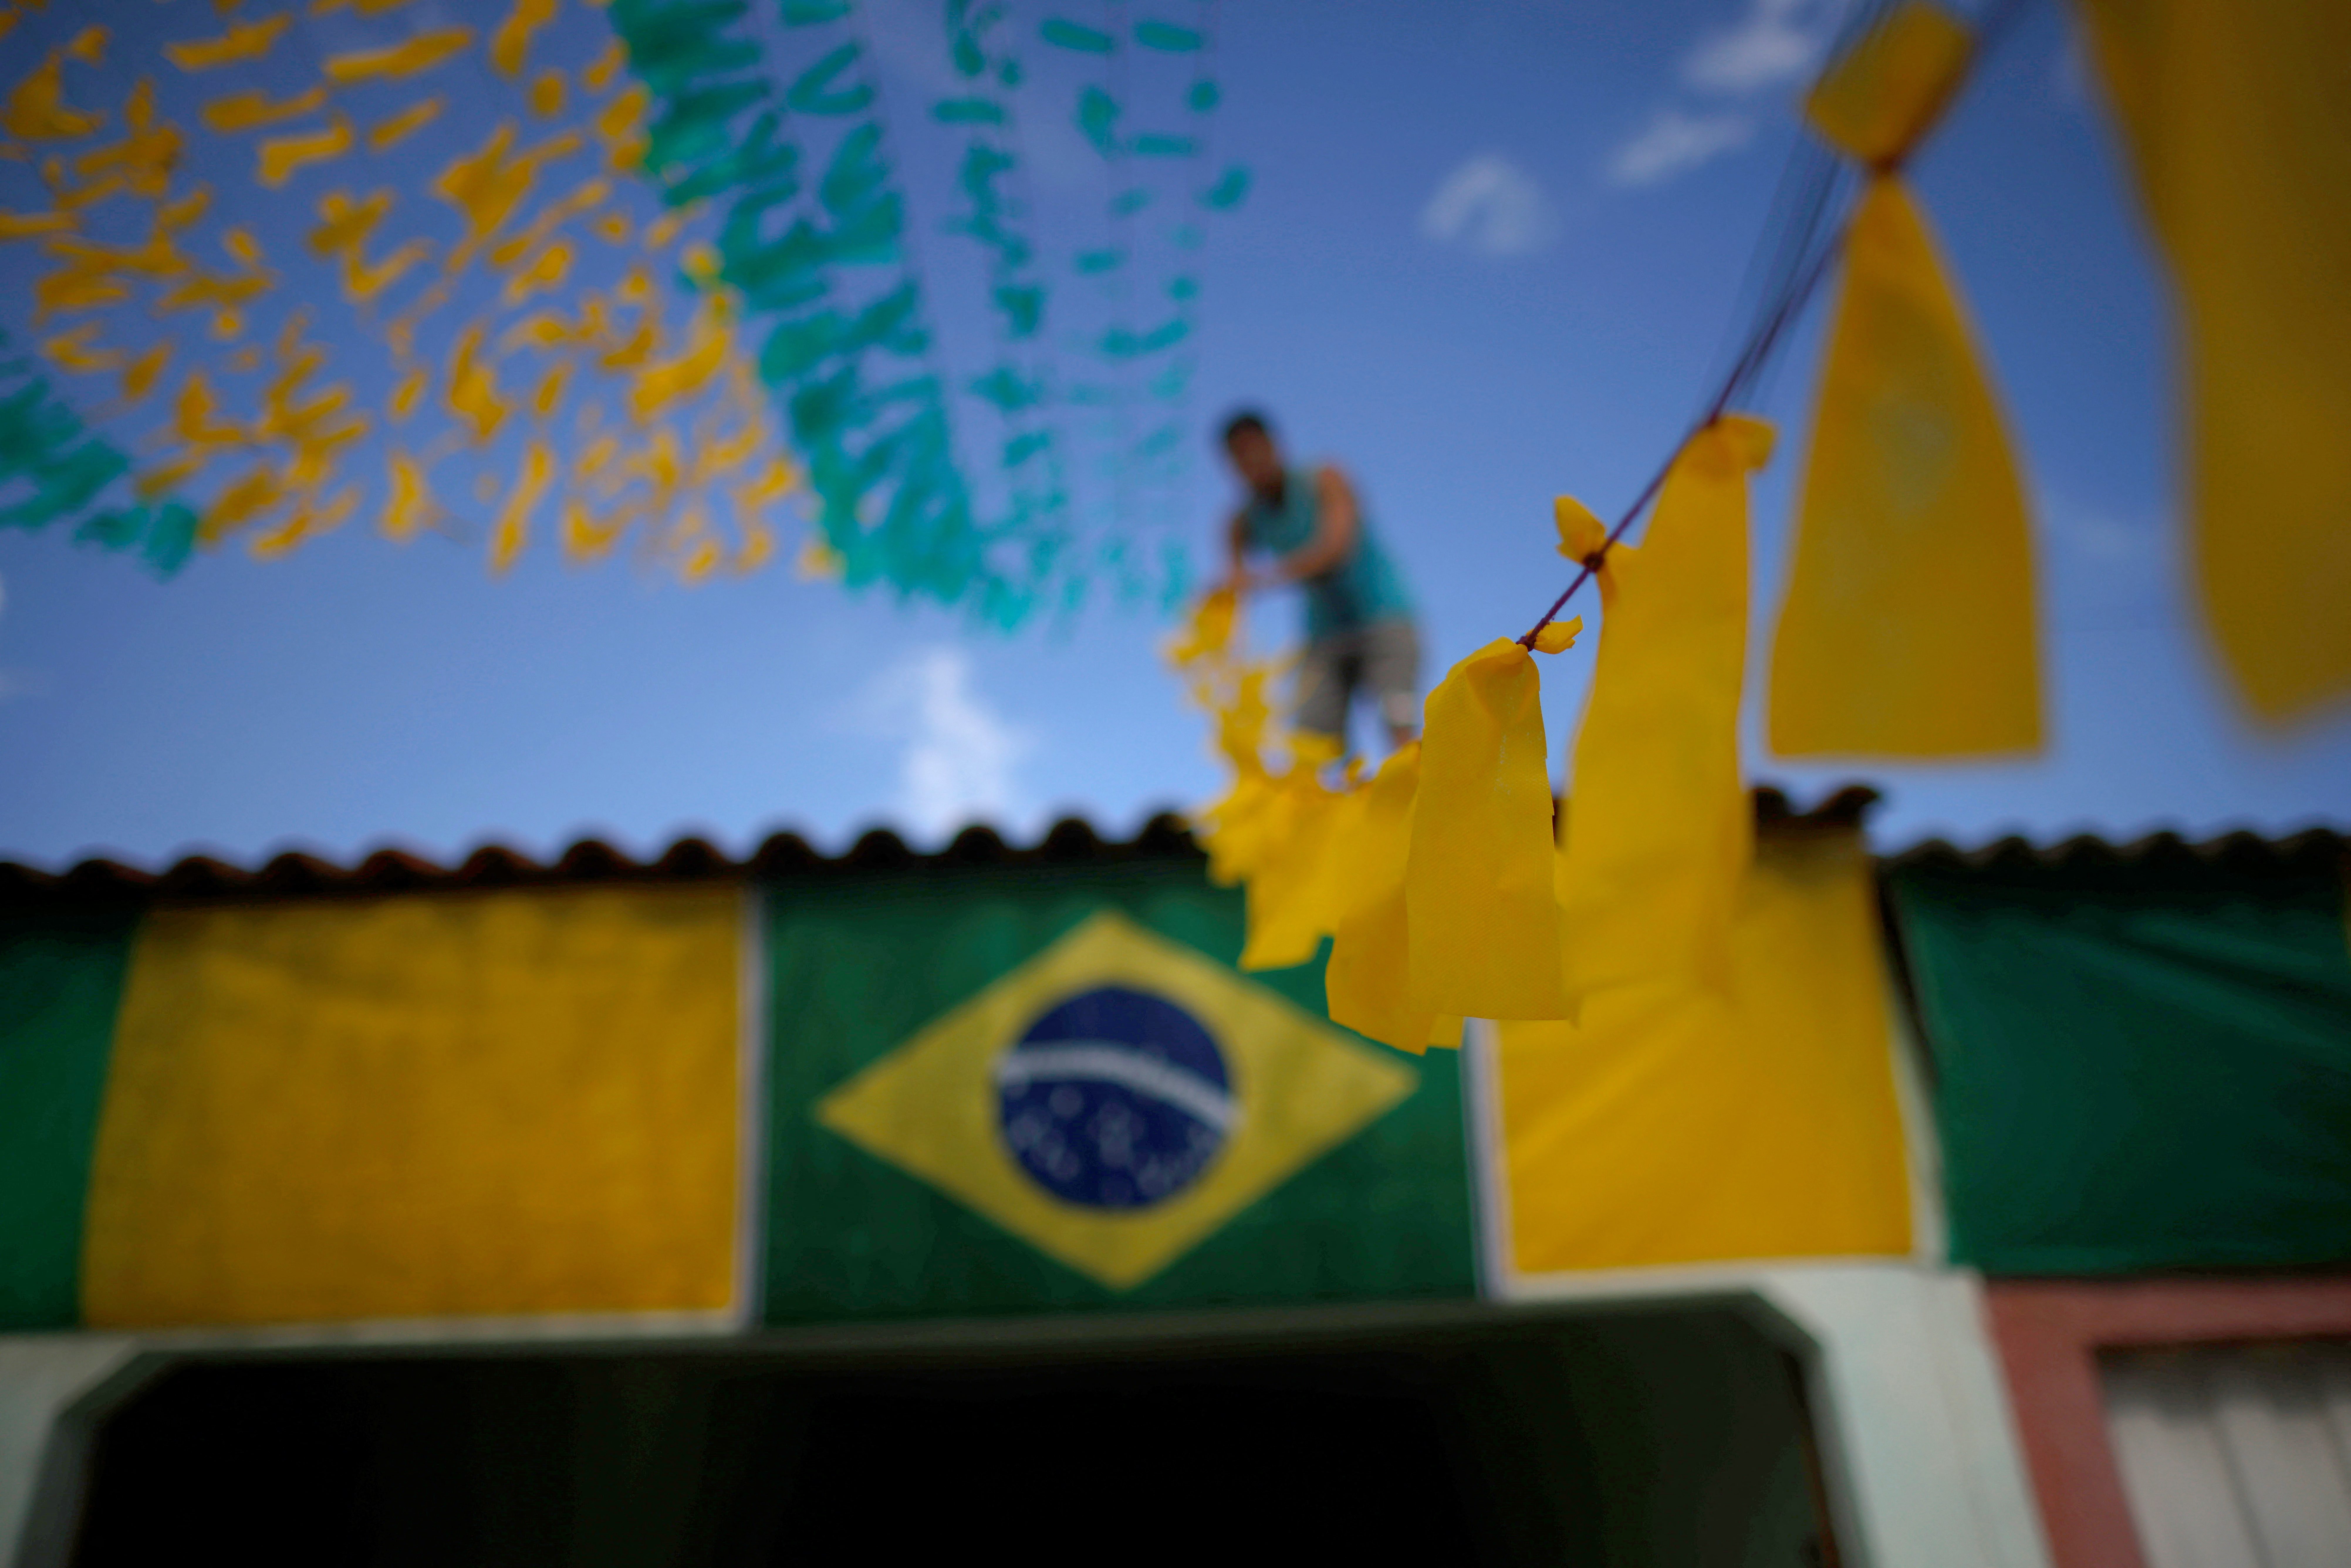 Vendas online caem até 28% durante jogos do Brasil na Copa do Mundo